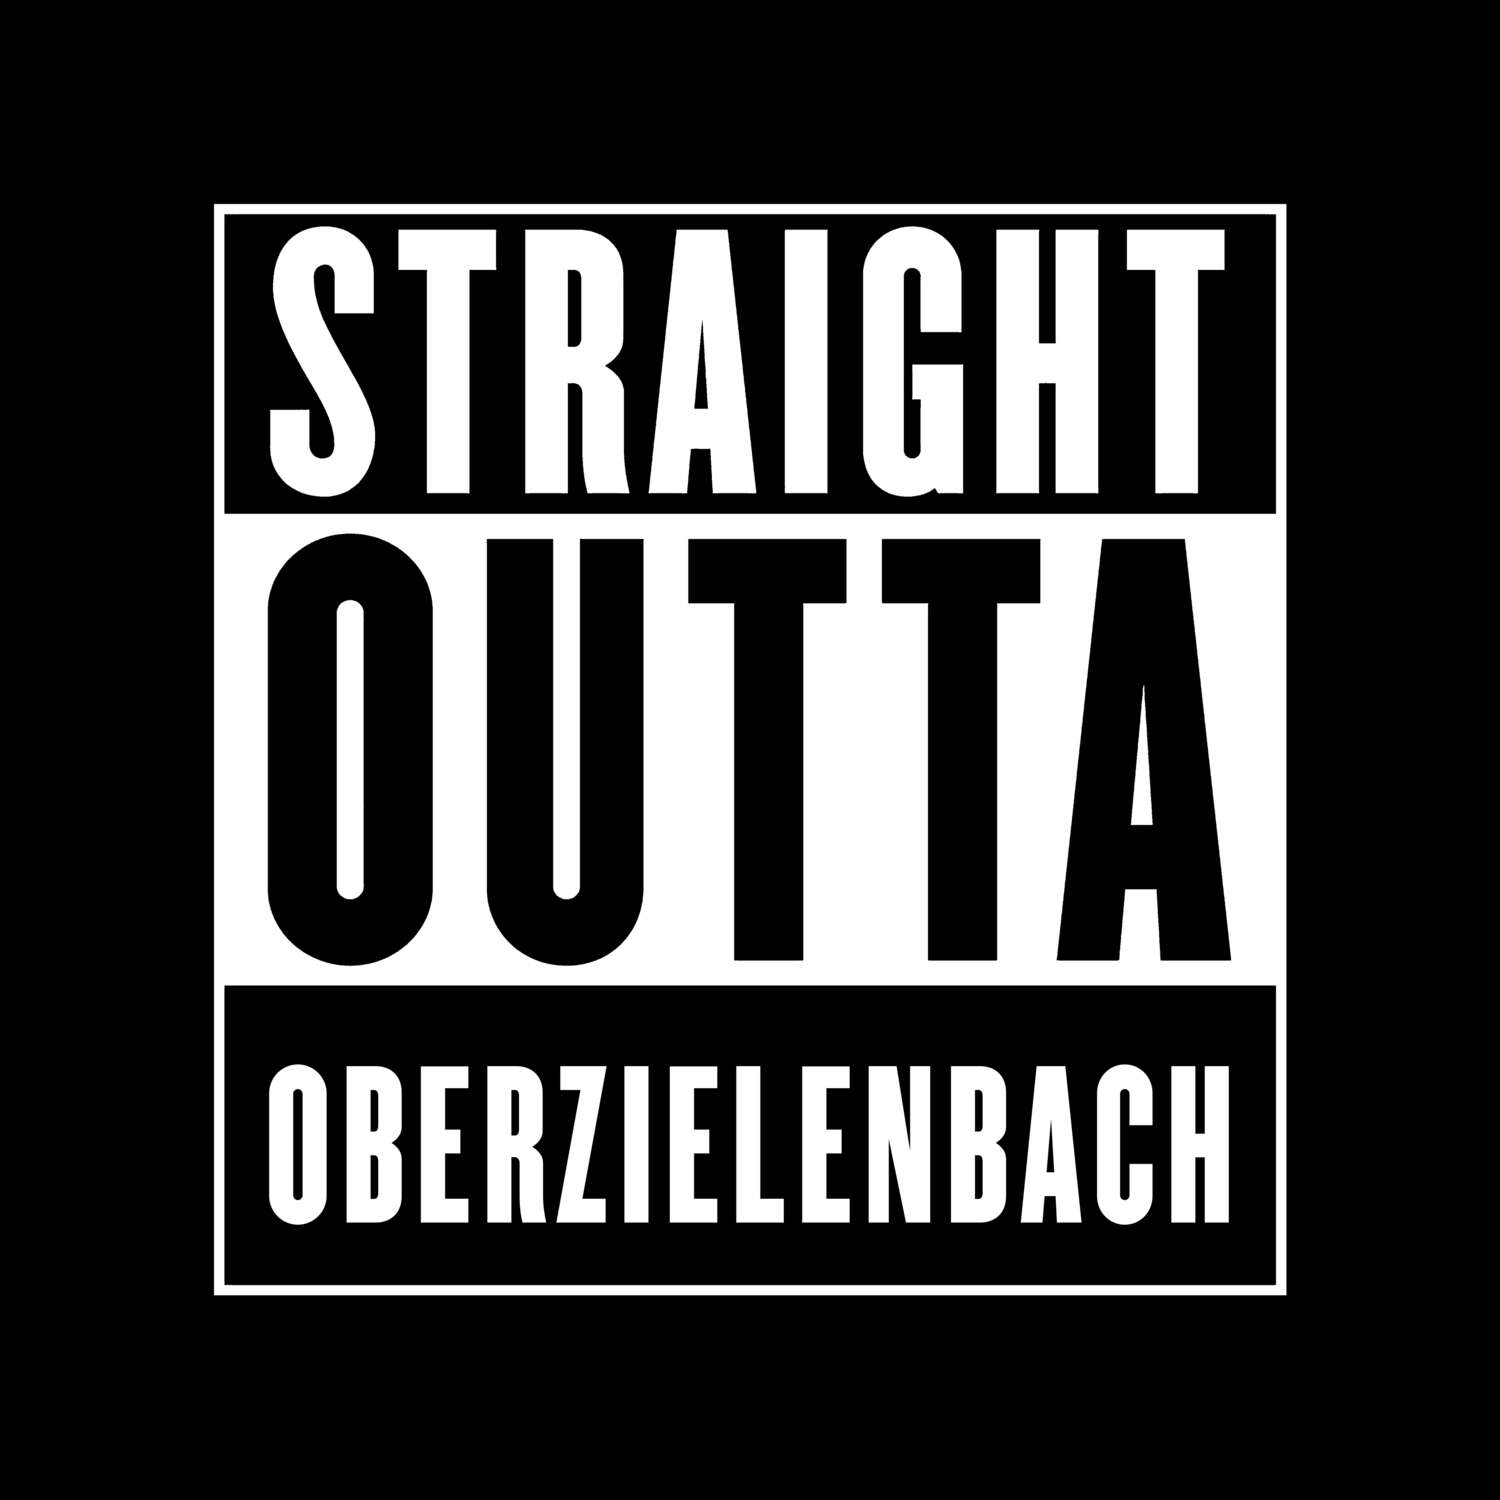 Oberzielenbach T-Shirt »Straight Outta«